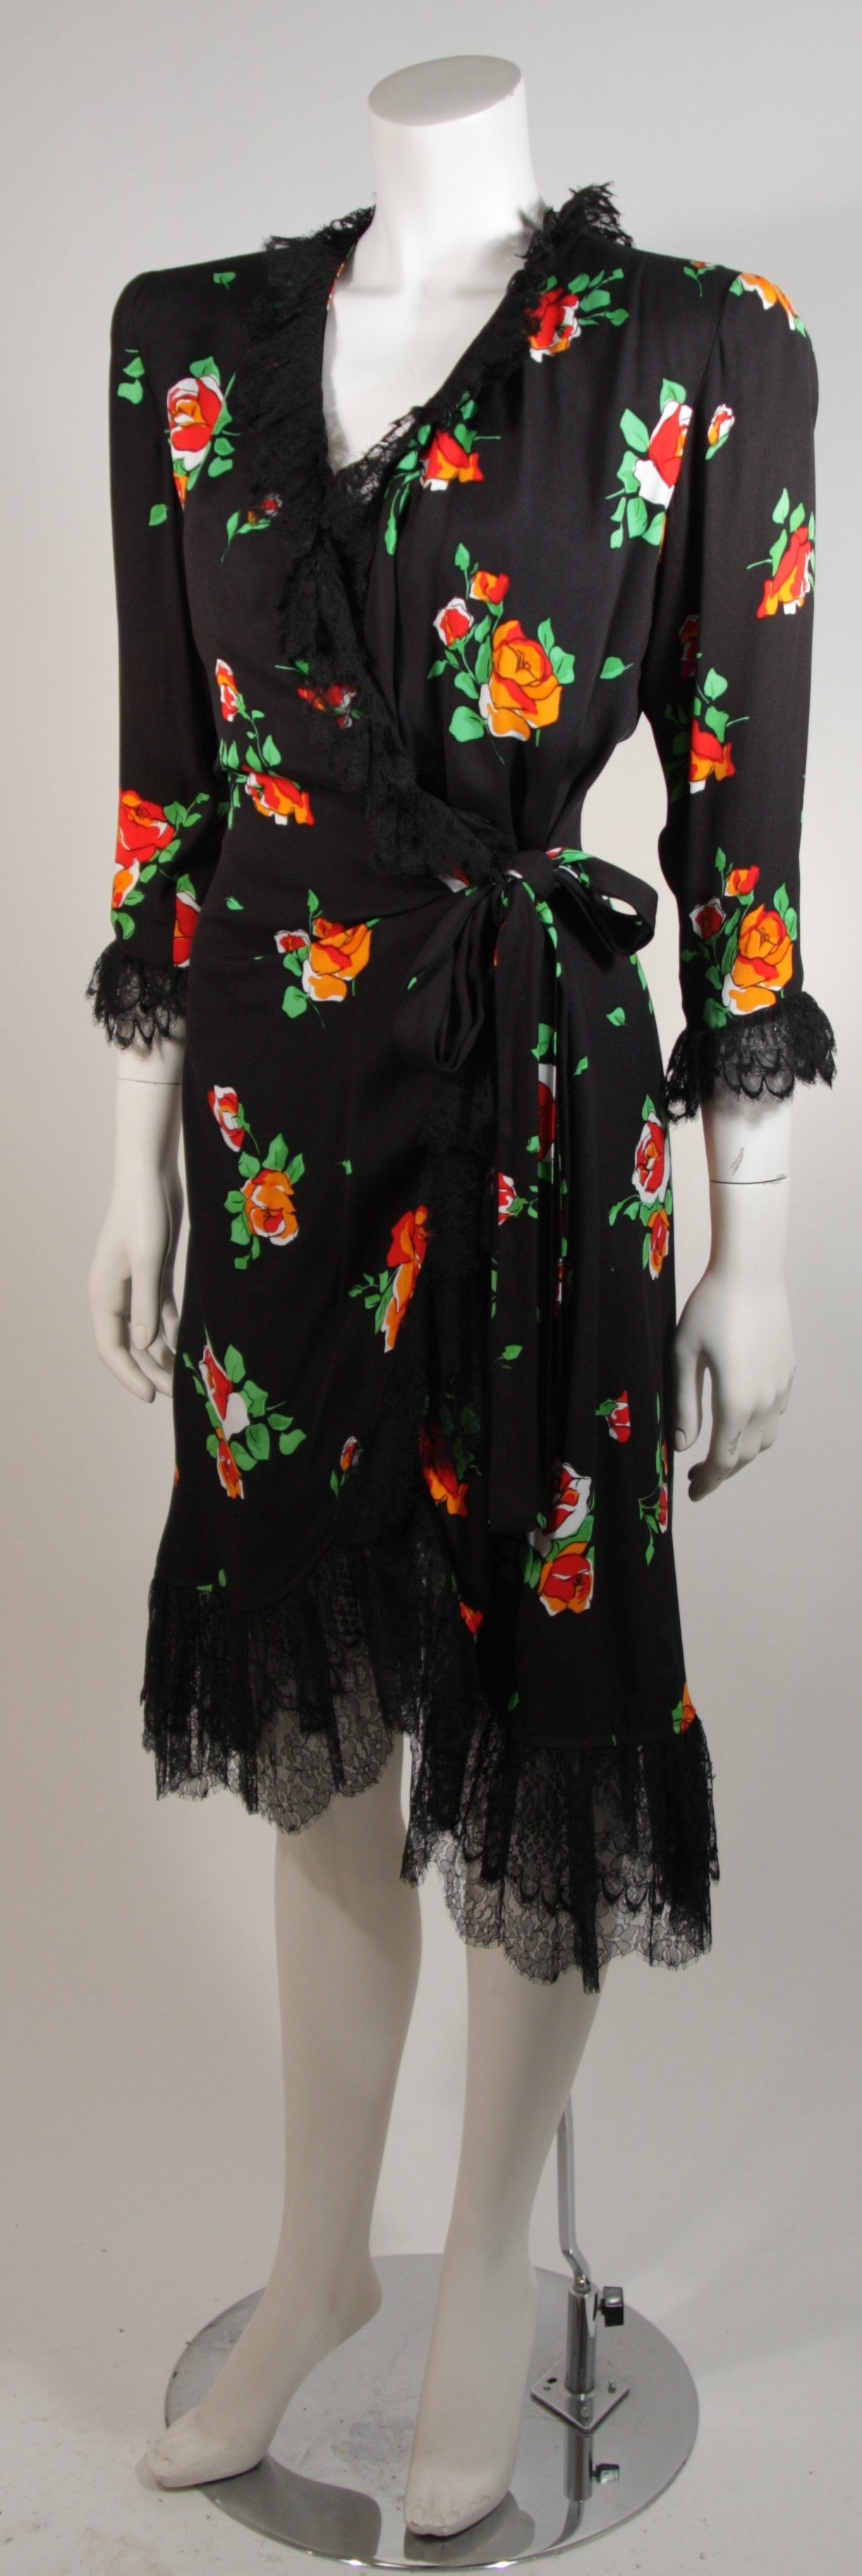 Women's Saint Laurent Rive Gauche Black Crepe Floral Wrap Dress with Lace Trim Size 42